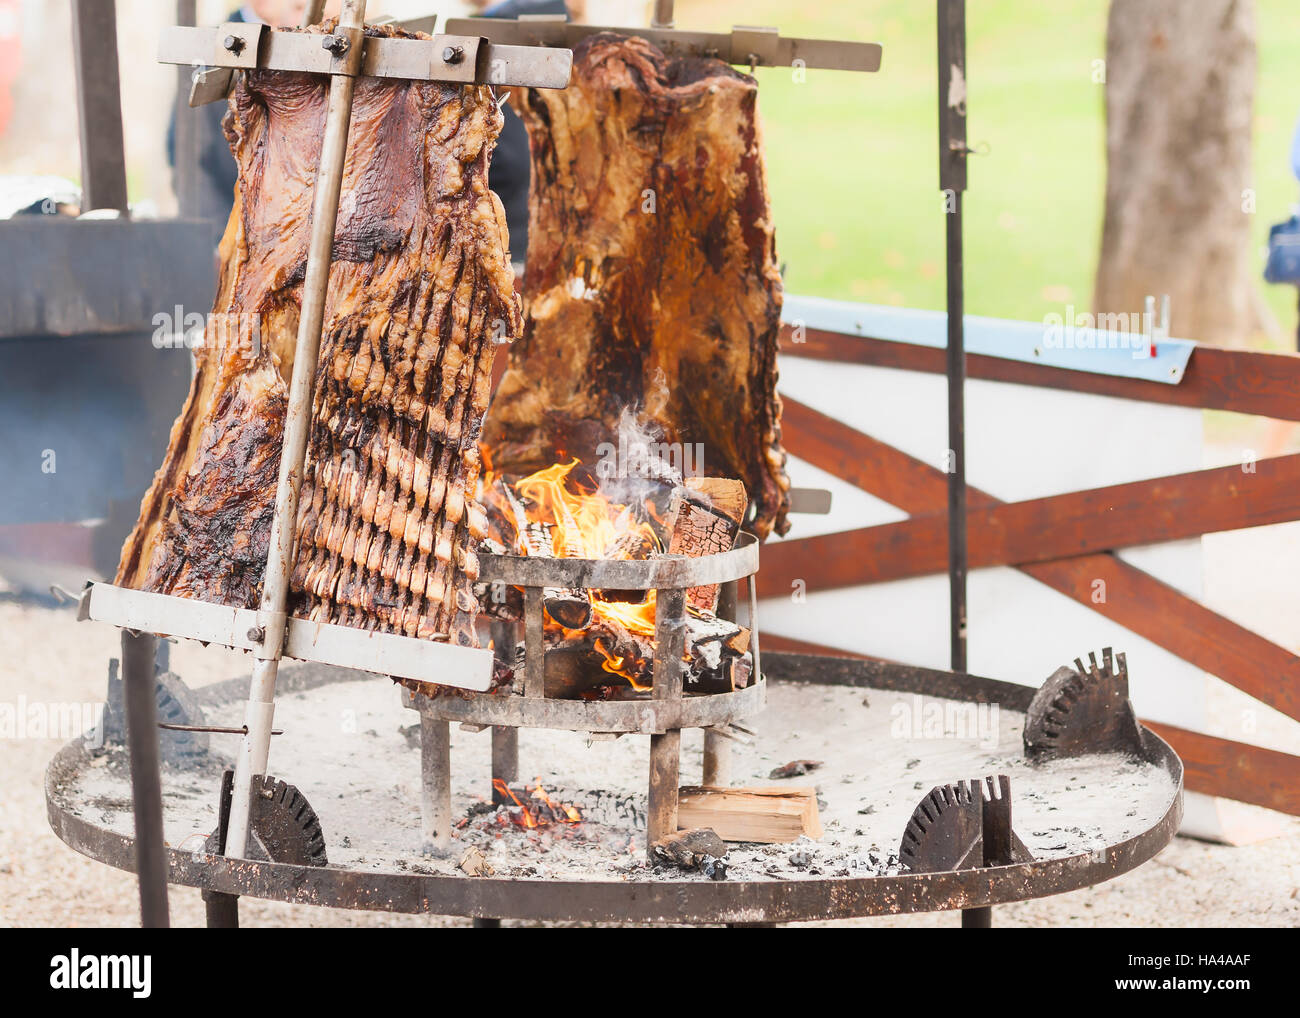 Asado, barbecue traditionnel en Argentine, un plat de viande rôtie de boeuf cuit sur un gril vertical placé autour de fire Banque D'Images